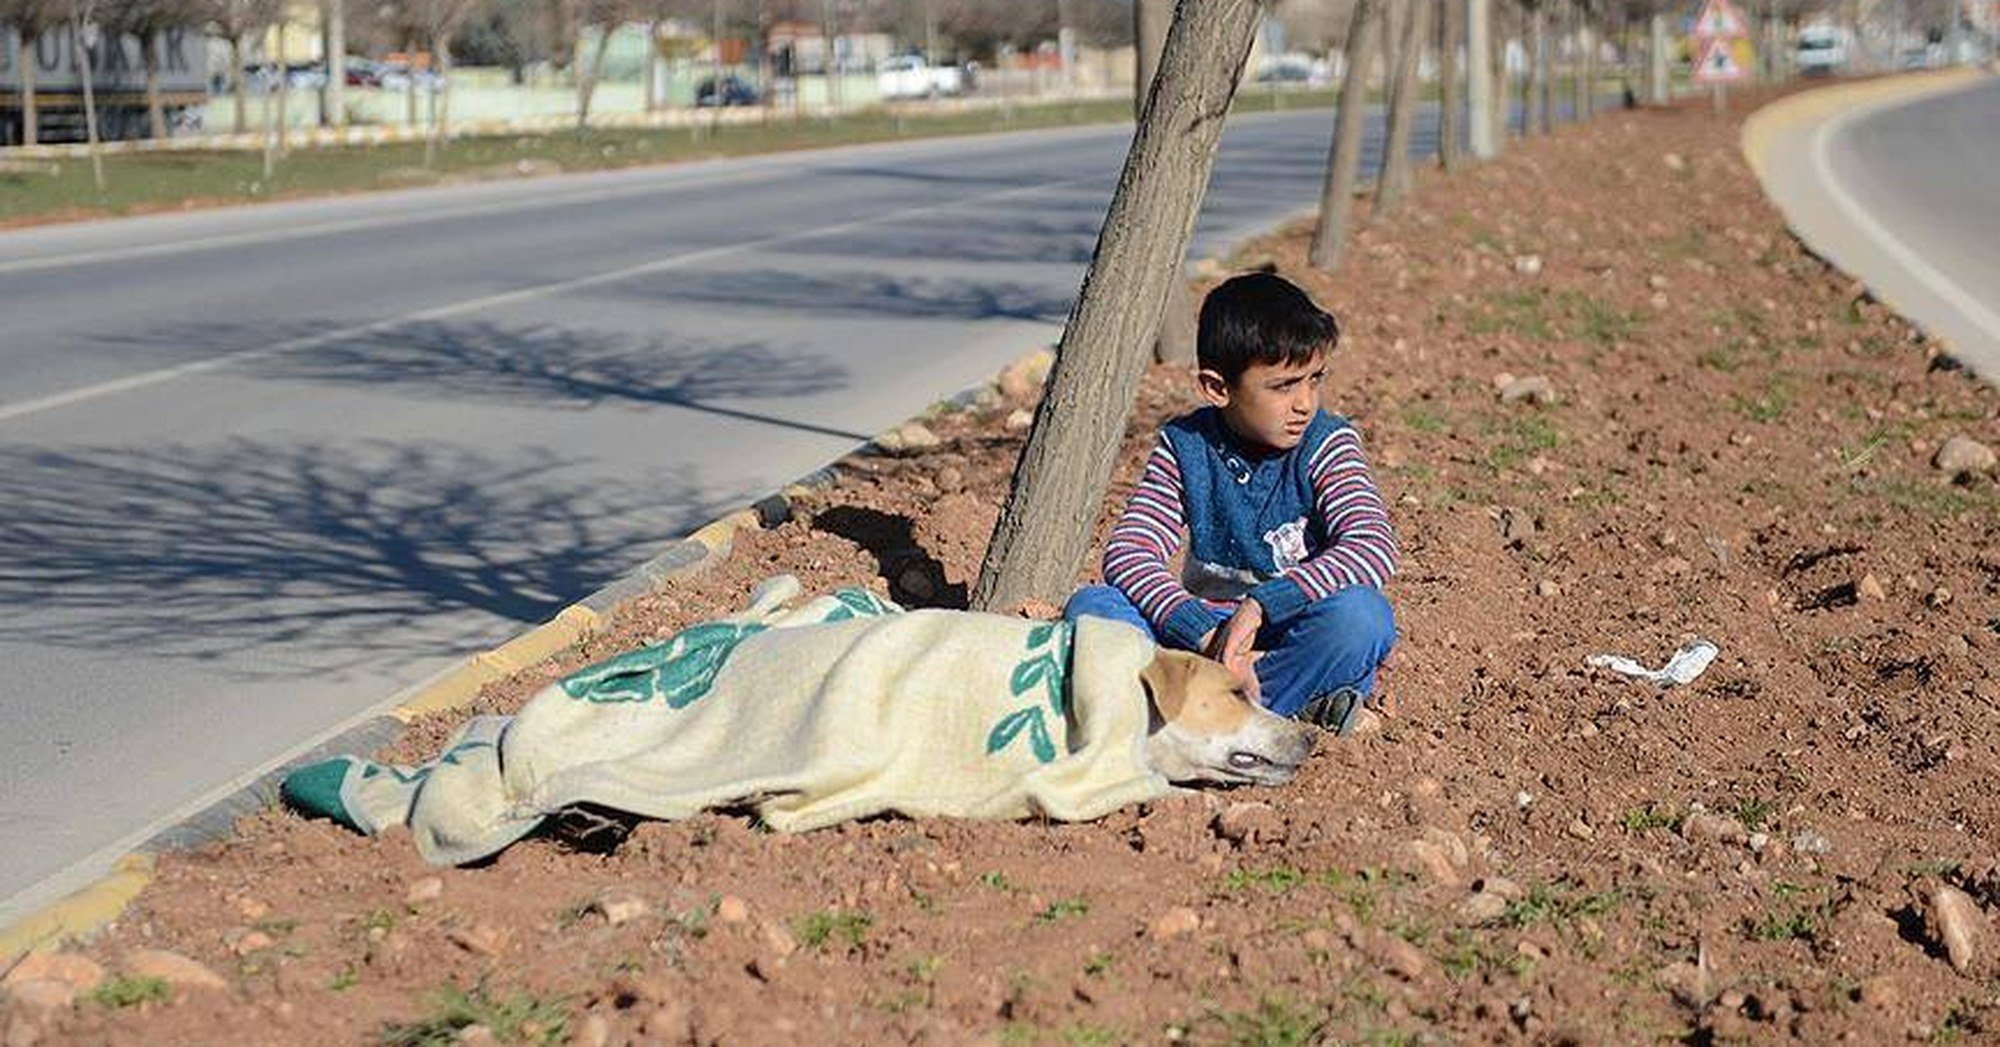 Refugiado sírio, de 8 anos, conforta cão ferido na rua até chegar ajuda